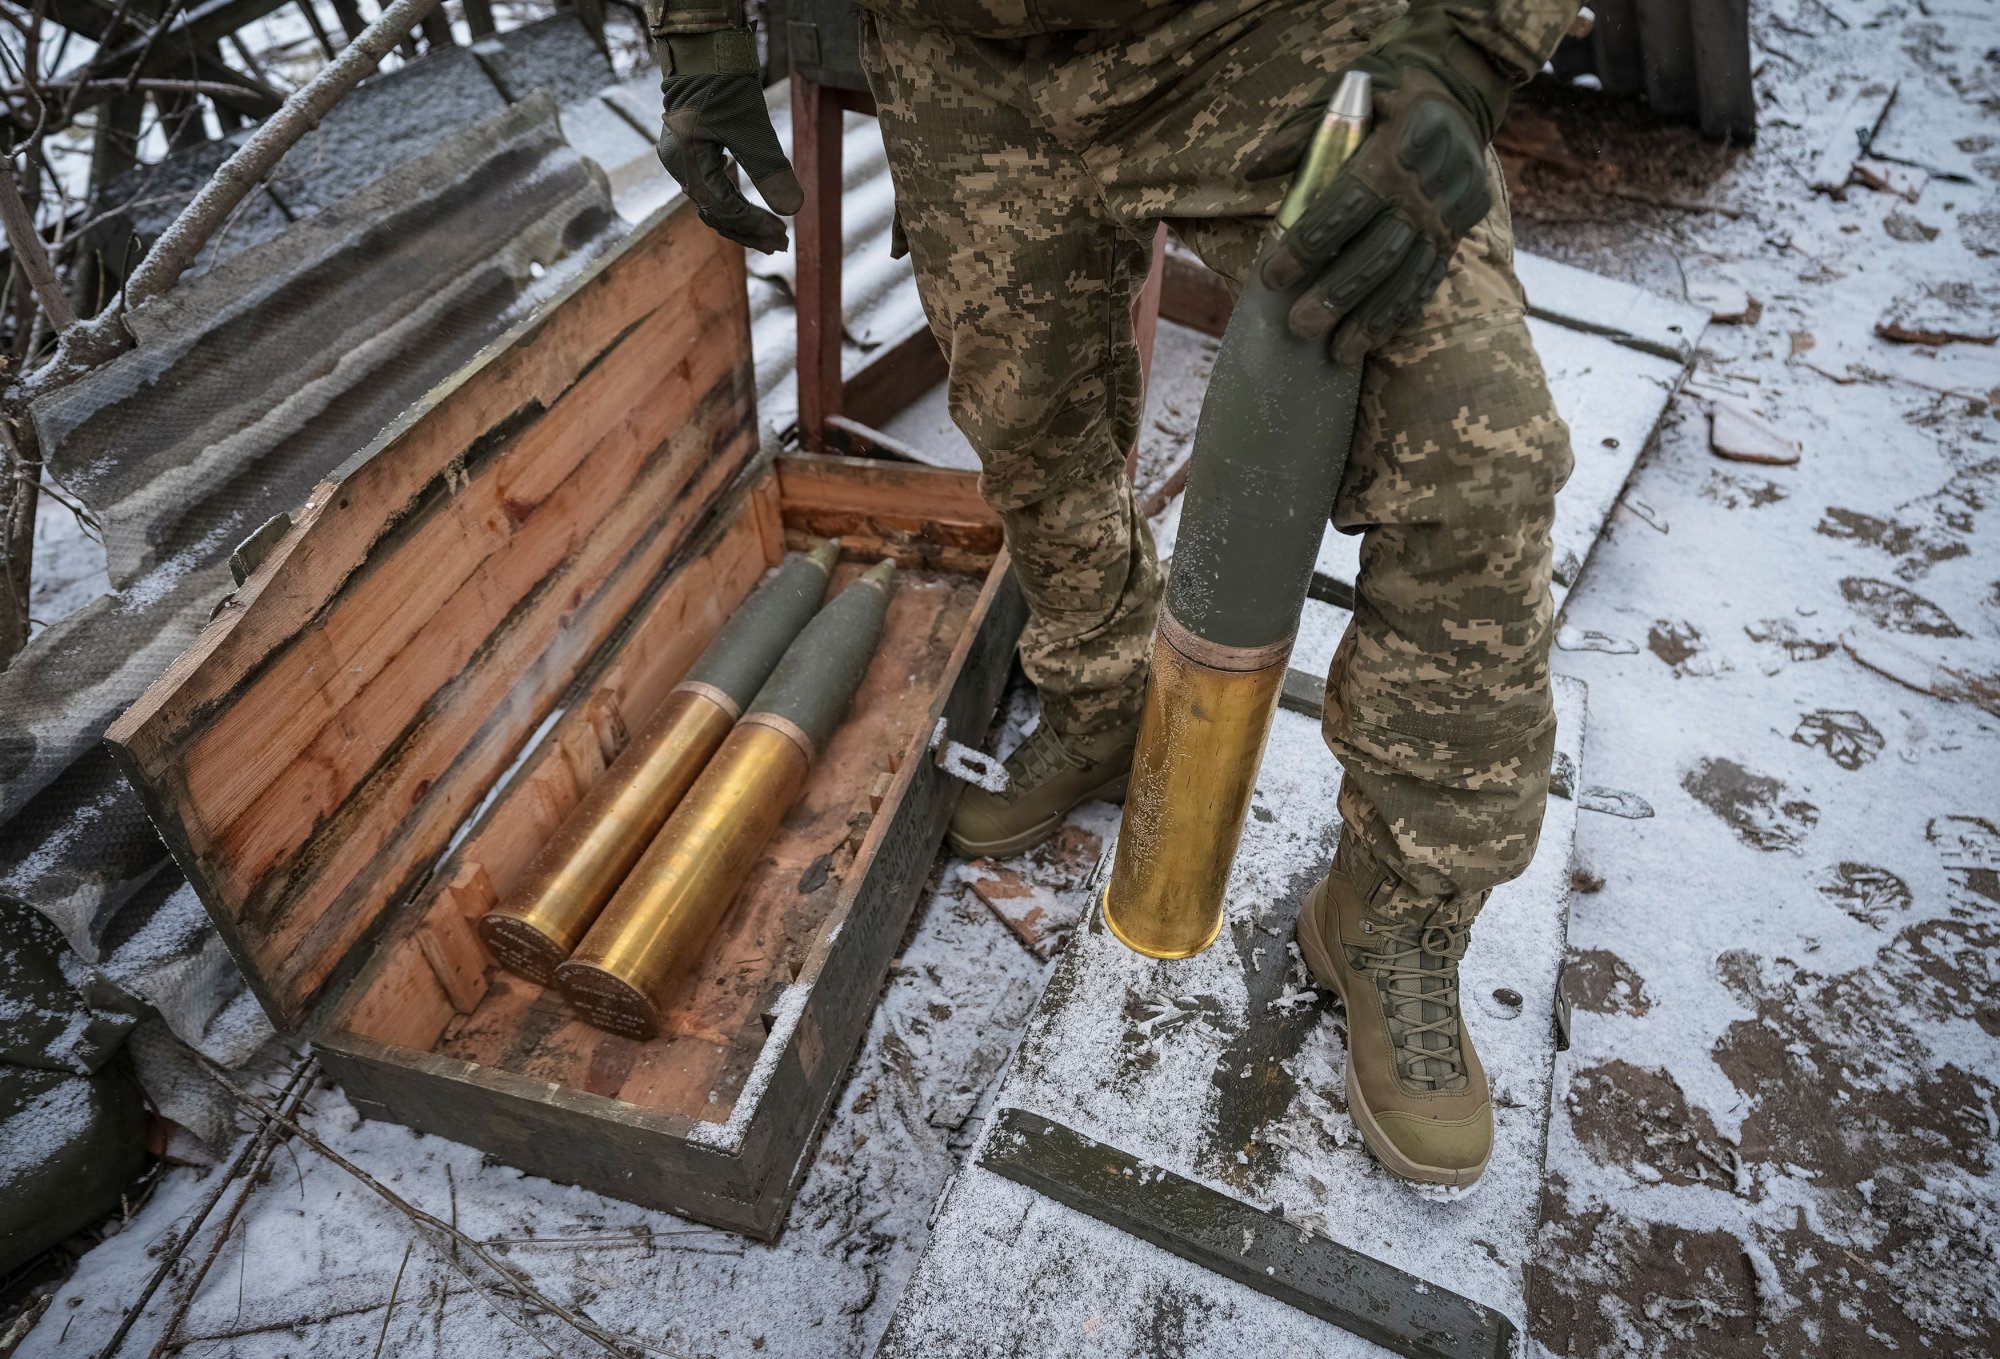 Ουκρανία: Η SBU αποκάλυψε μαζική απάτη στην προμήθεια όπλων άνω των 40 εκάτ. δολαρίων